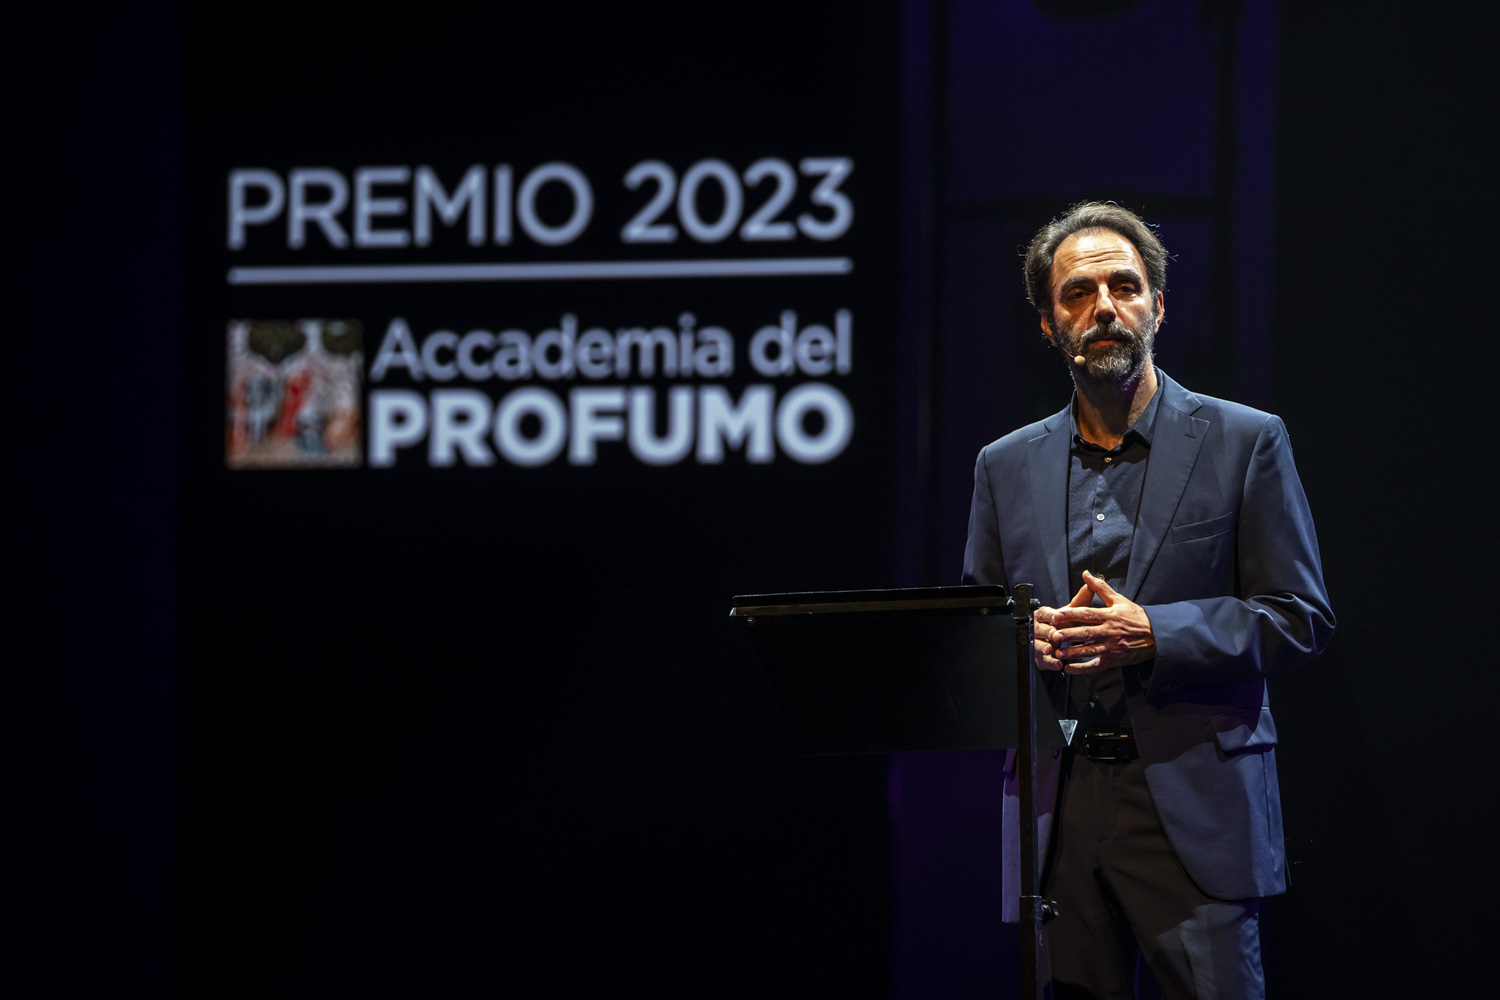 Premio Accademia del Profumo 2023 - Accademia del Profumo